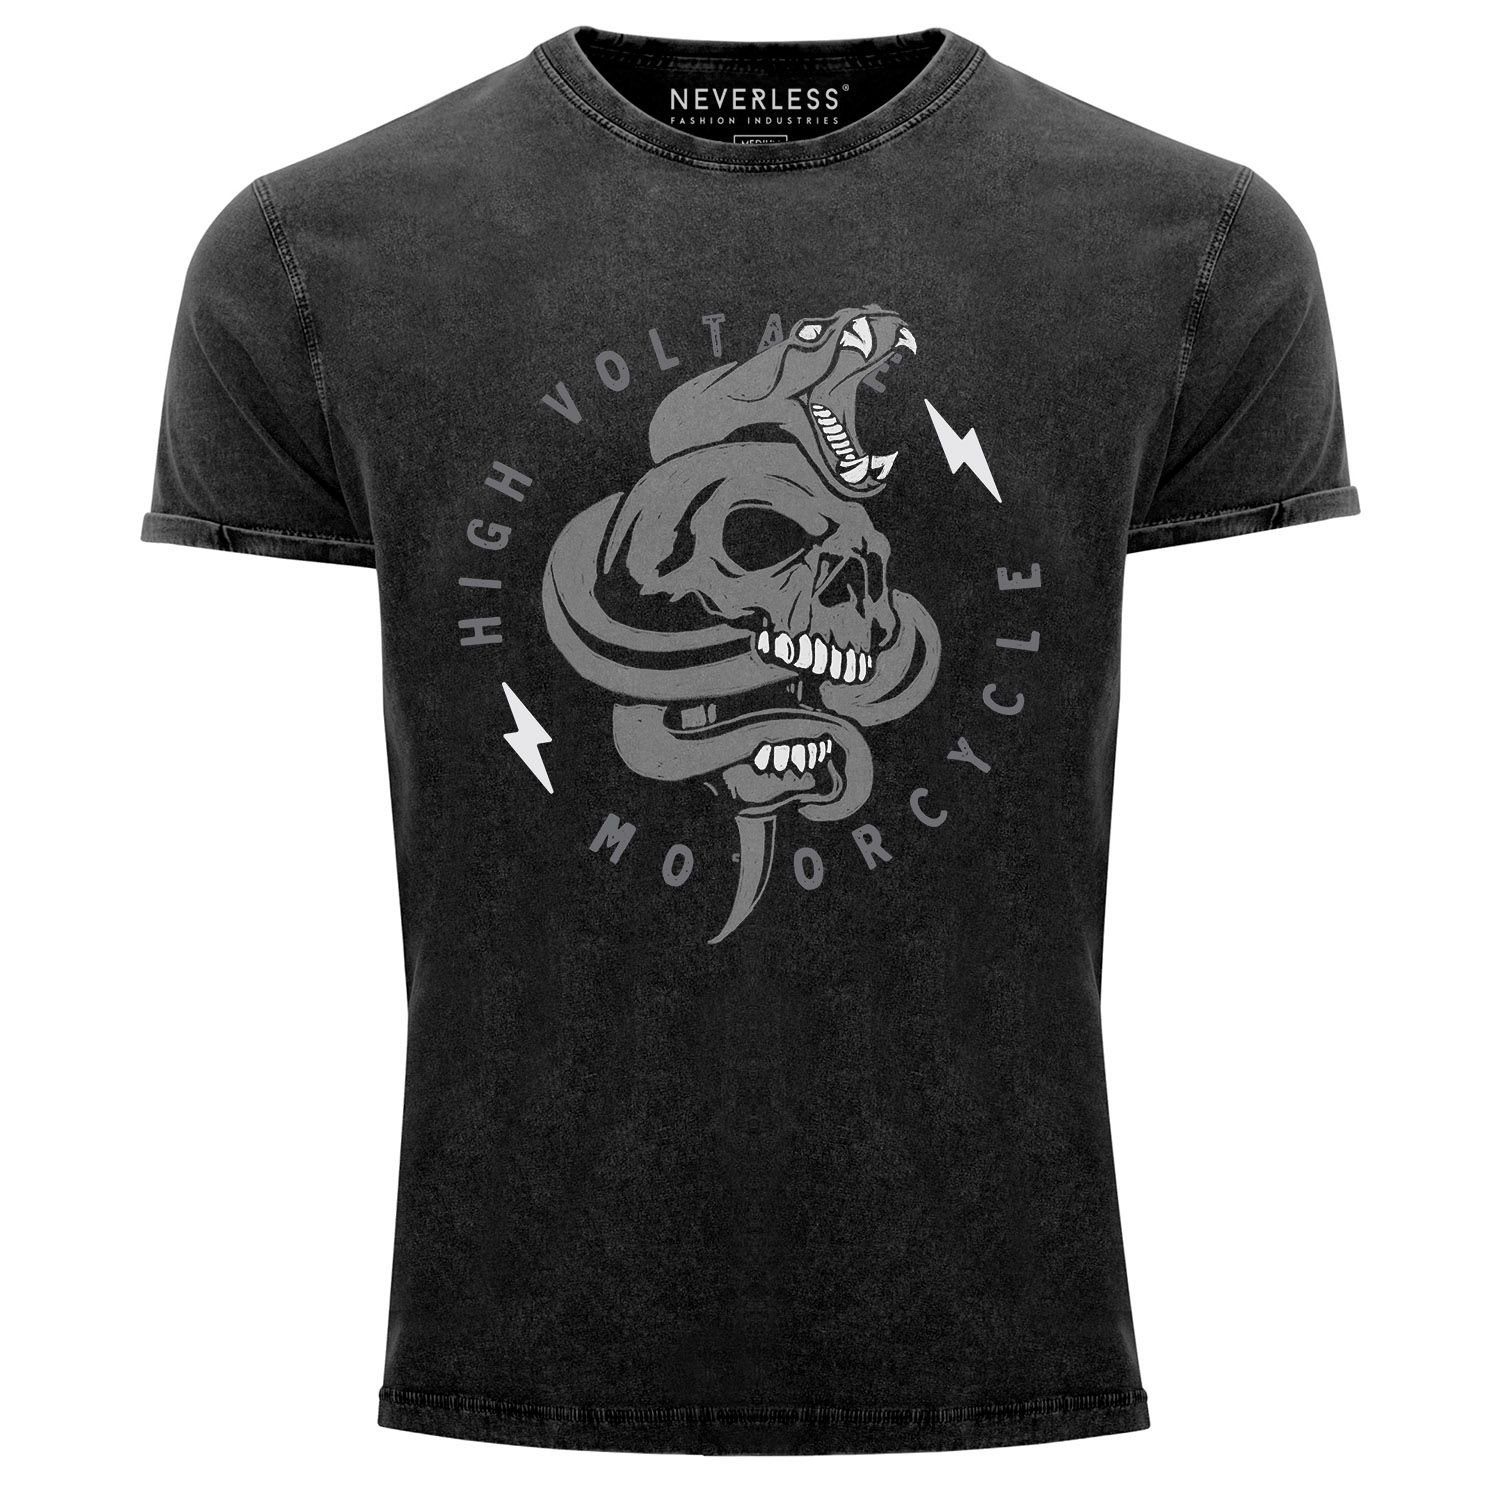 Herren Shirts Neverless Print-Shirt Neverless® Herren T-Shirt Totenkopf Print Kobra Motiv High Voltage Motorcycle Schriftzug Roc